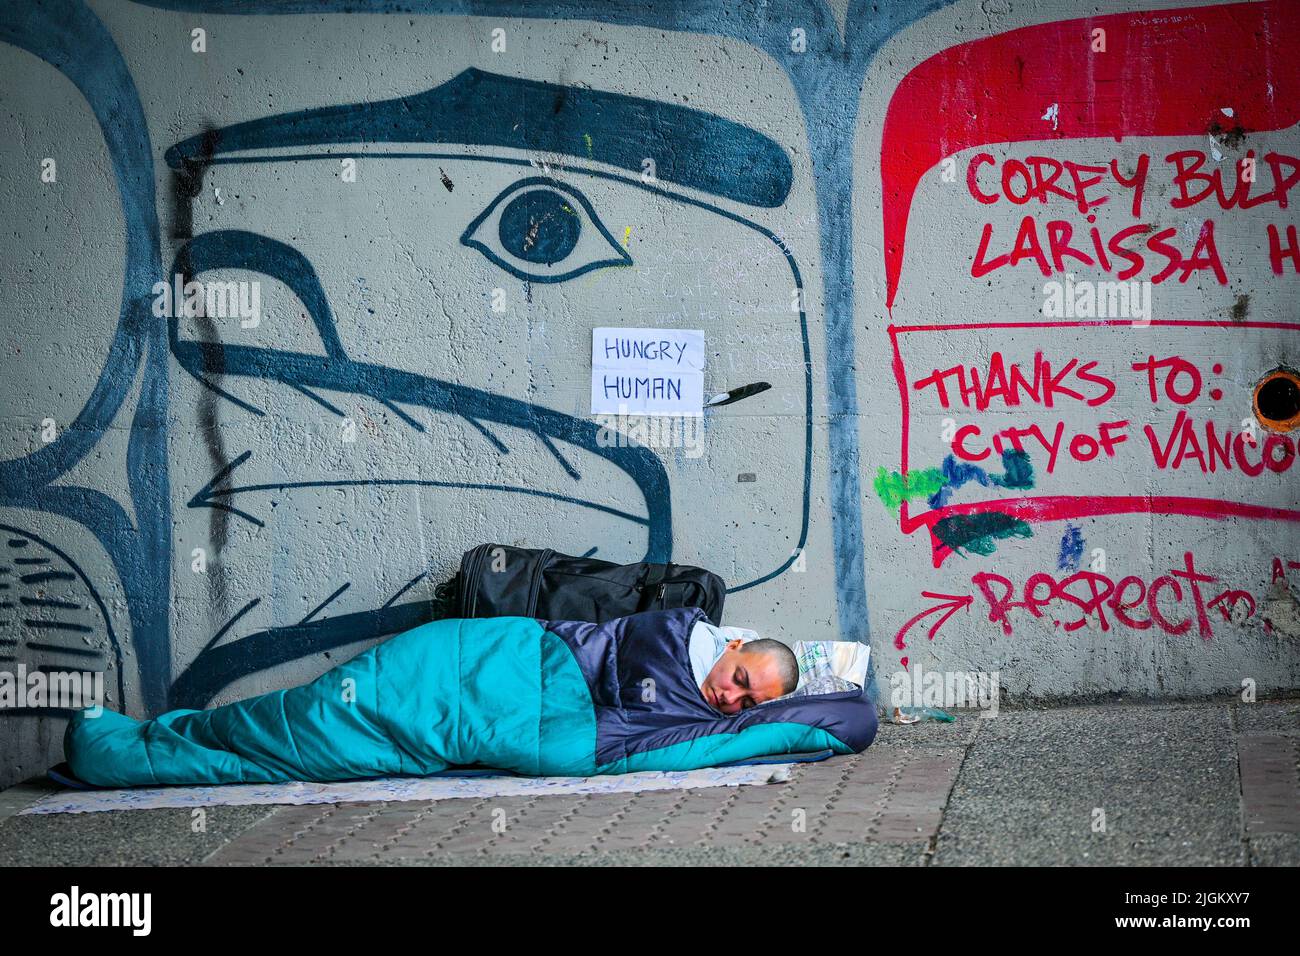 Personne sans-abri affamée dormant sous le pont, Vancouver, Colombie-Britannique, Canada Banque D'Images